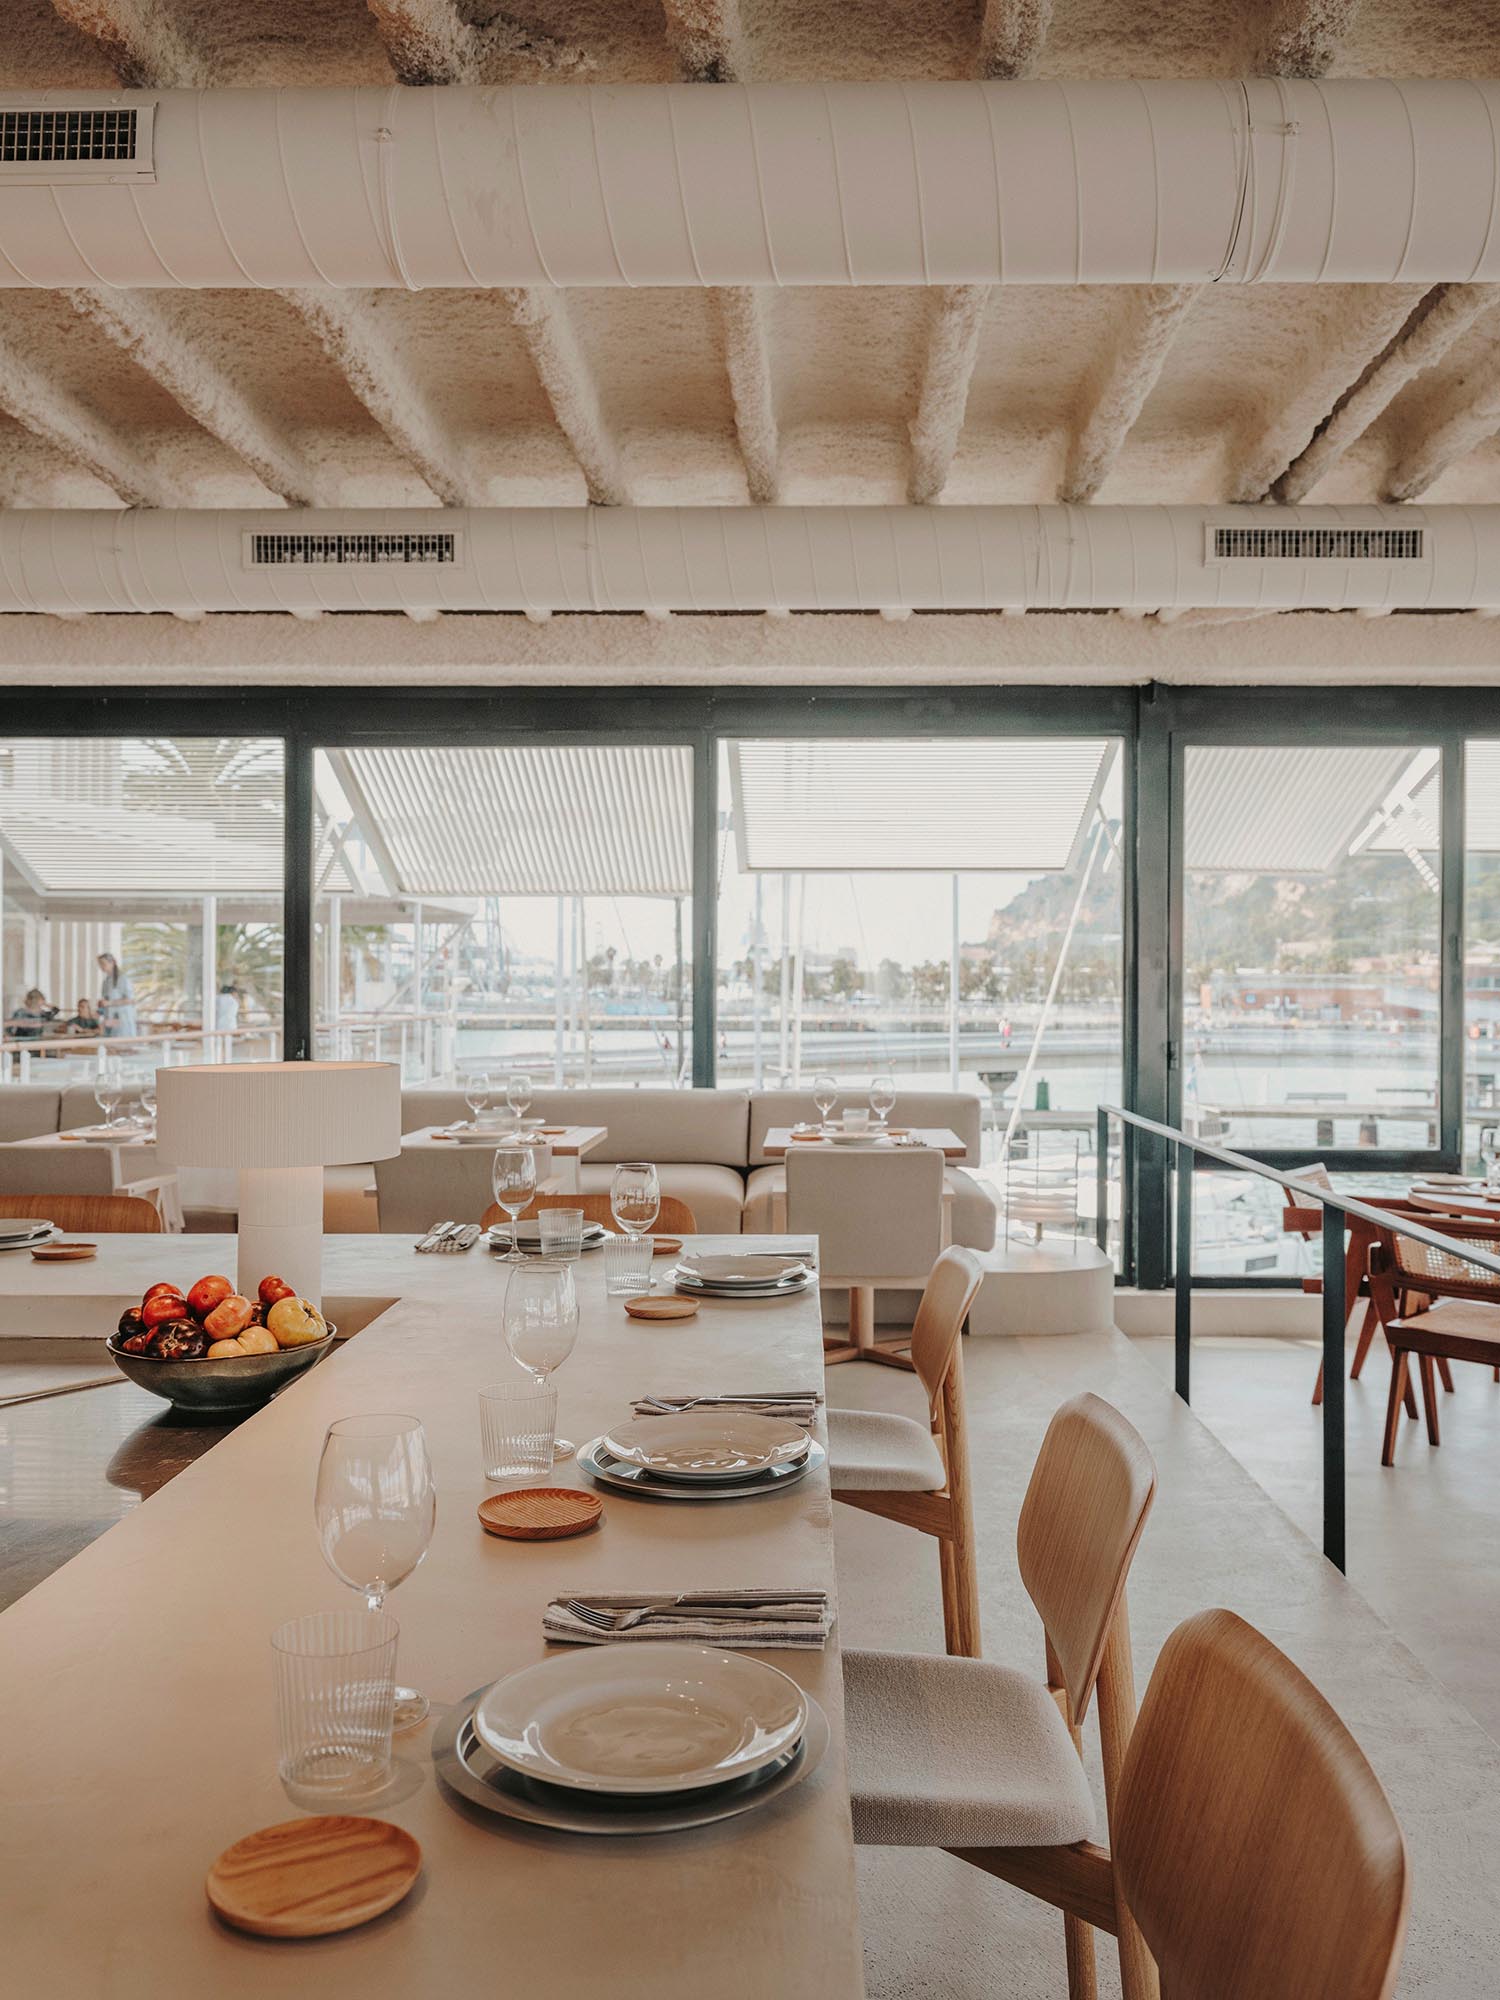 餐廳設計,Isern Serra Studio,休閑餐廳設計,巴塞羅那,現代風格餐廳設計案例,中性美學,海鮮酒吧餐廳